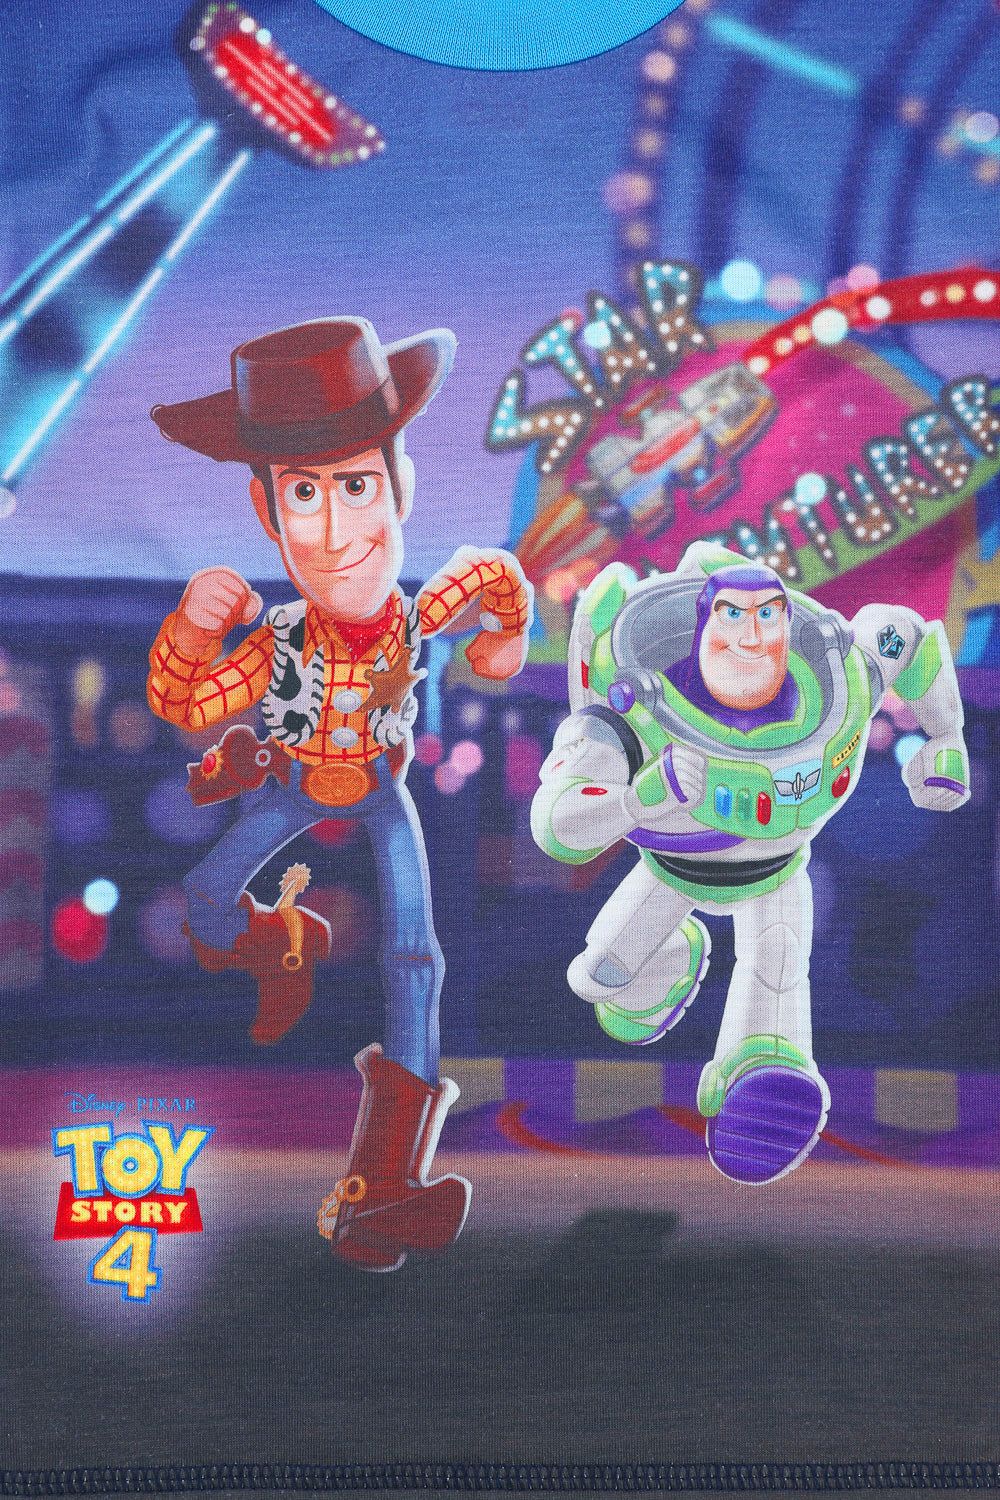 Toy Story 4 Buzz & Woody Short Pyjamas - Pyjamas.com